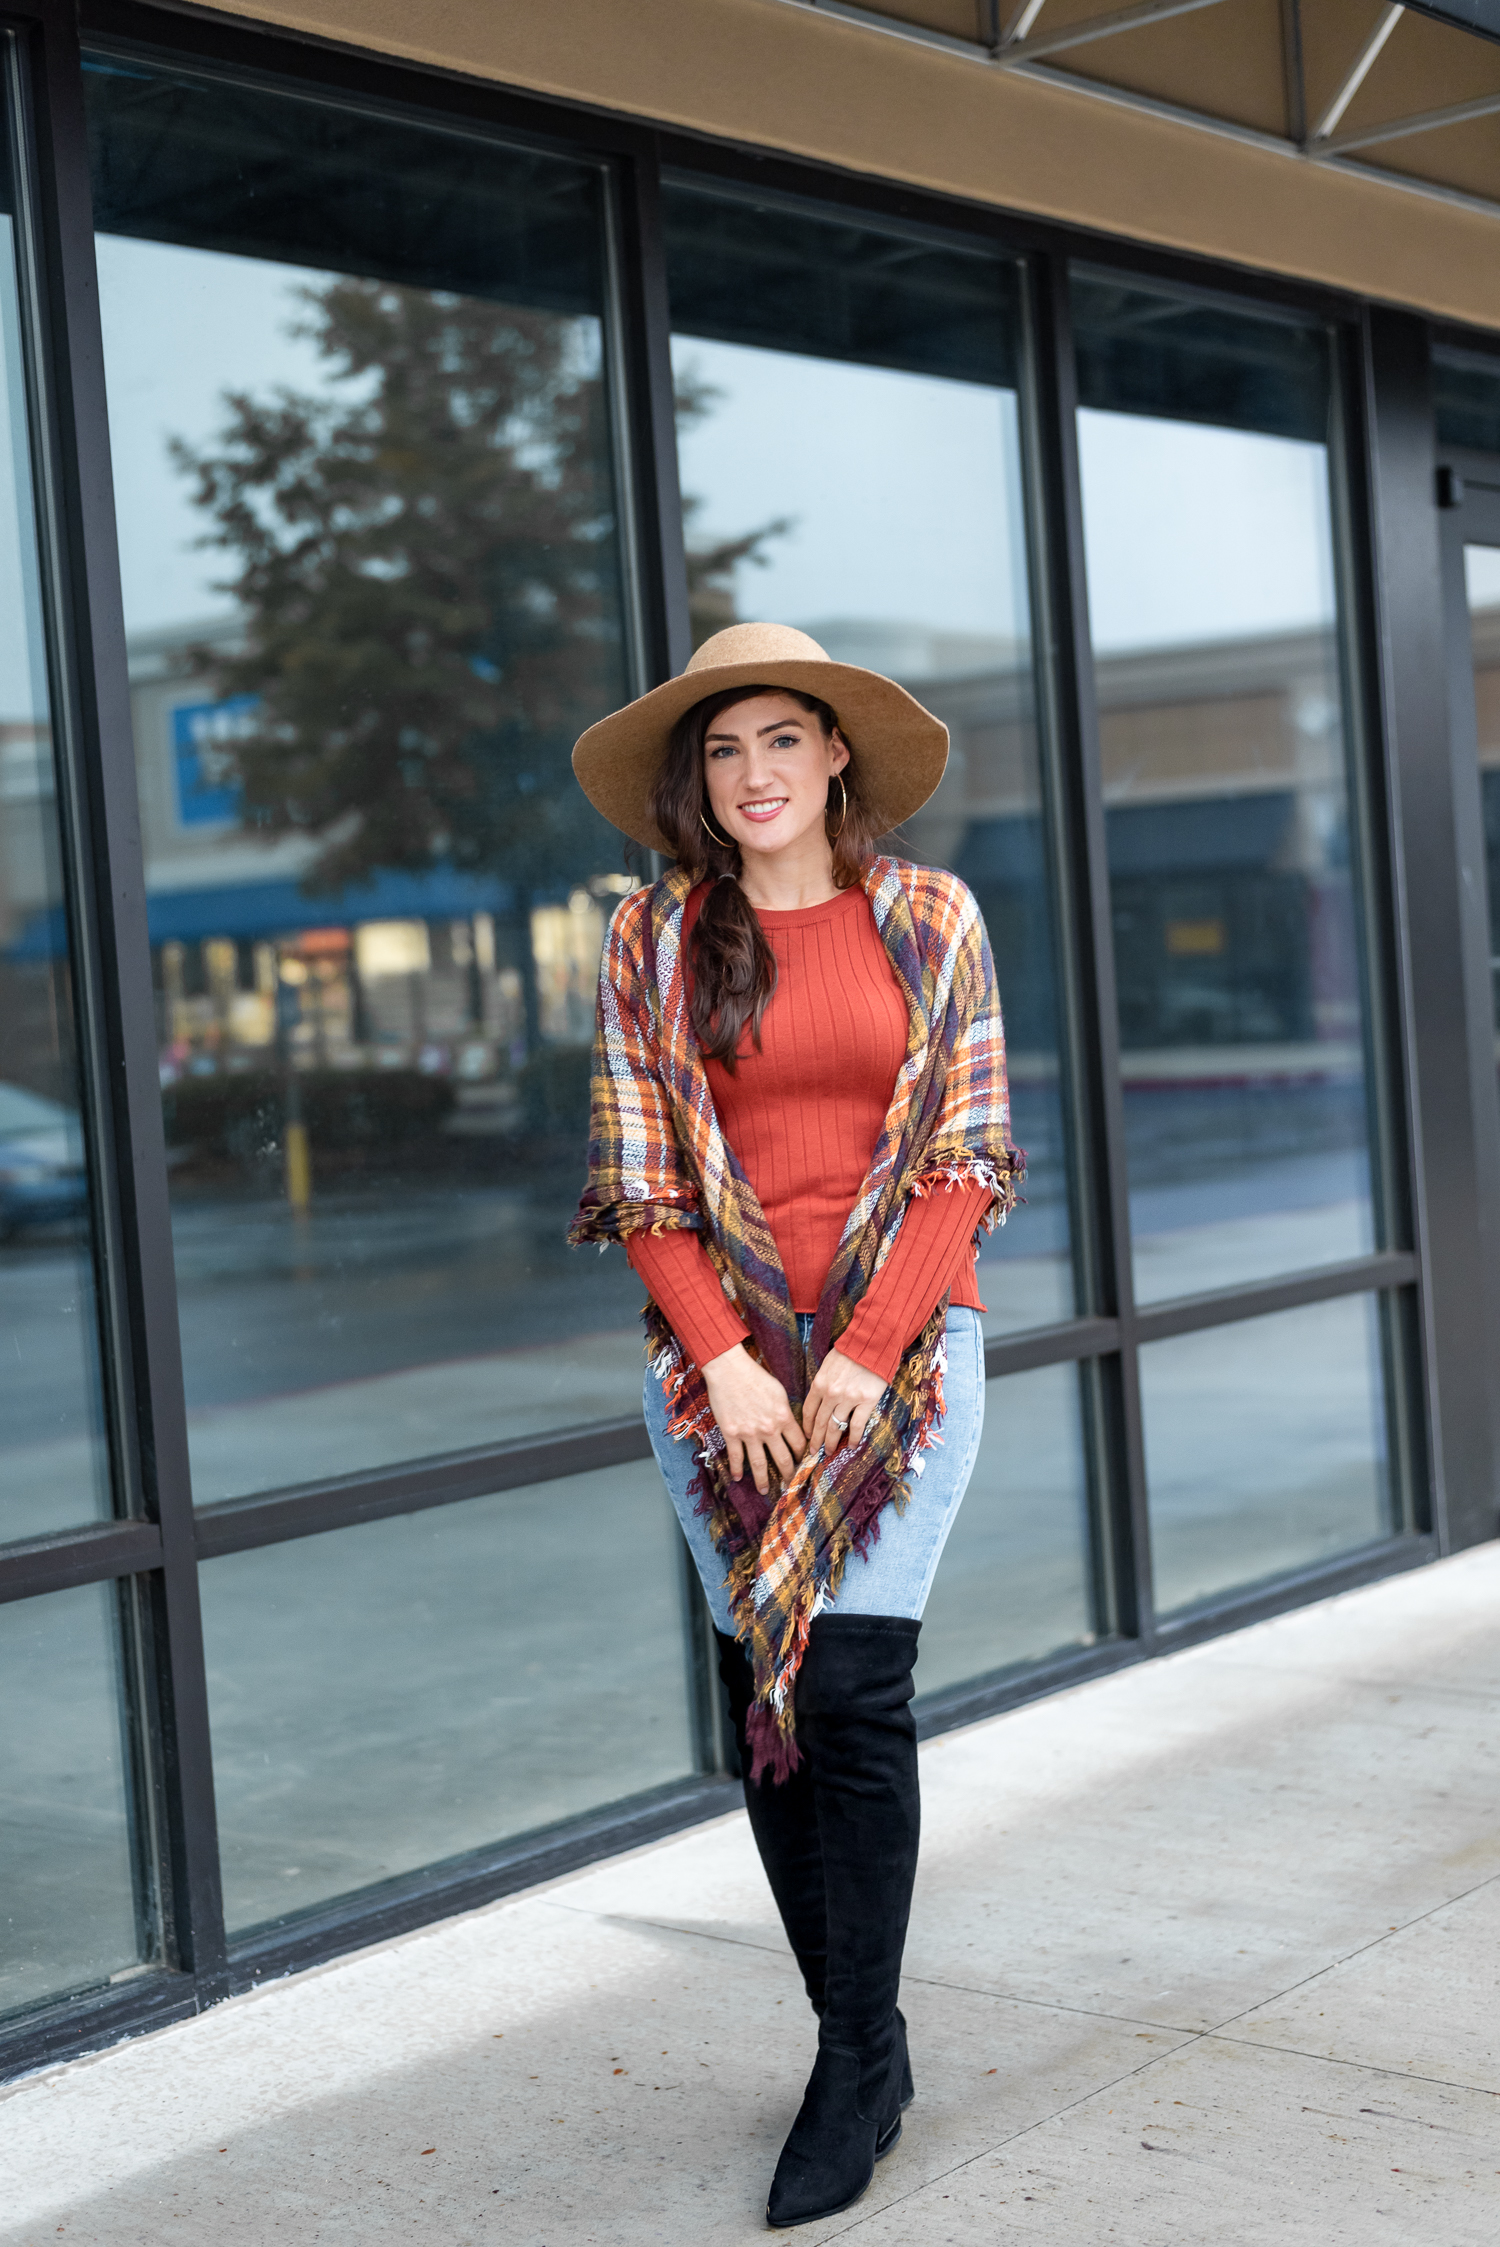 OTK Boots & Blanket Scarf style by Atlanta Fashion Blogger Erica Valentin